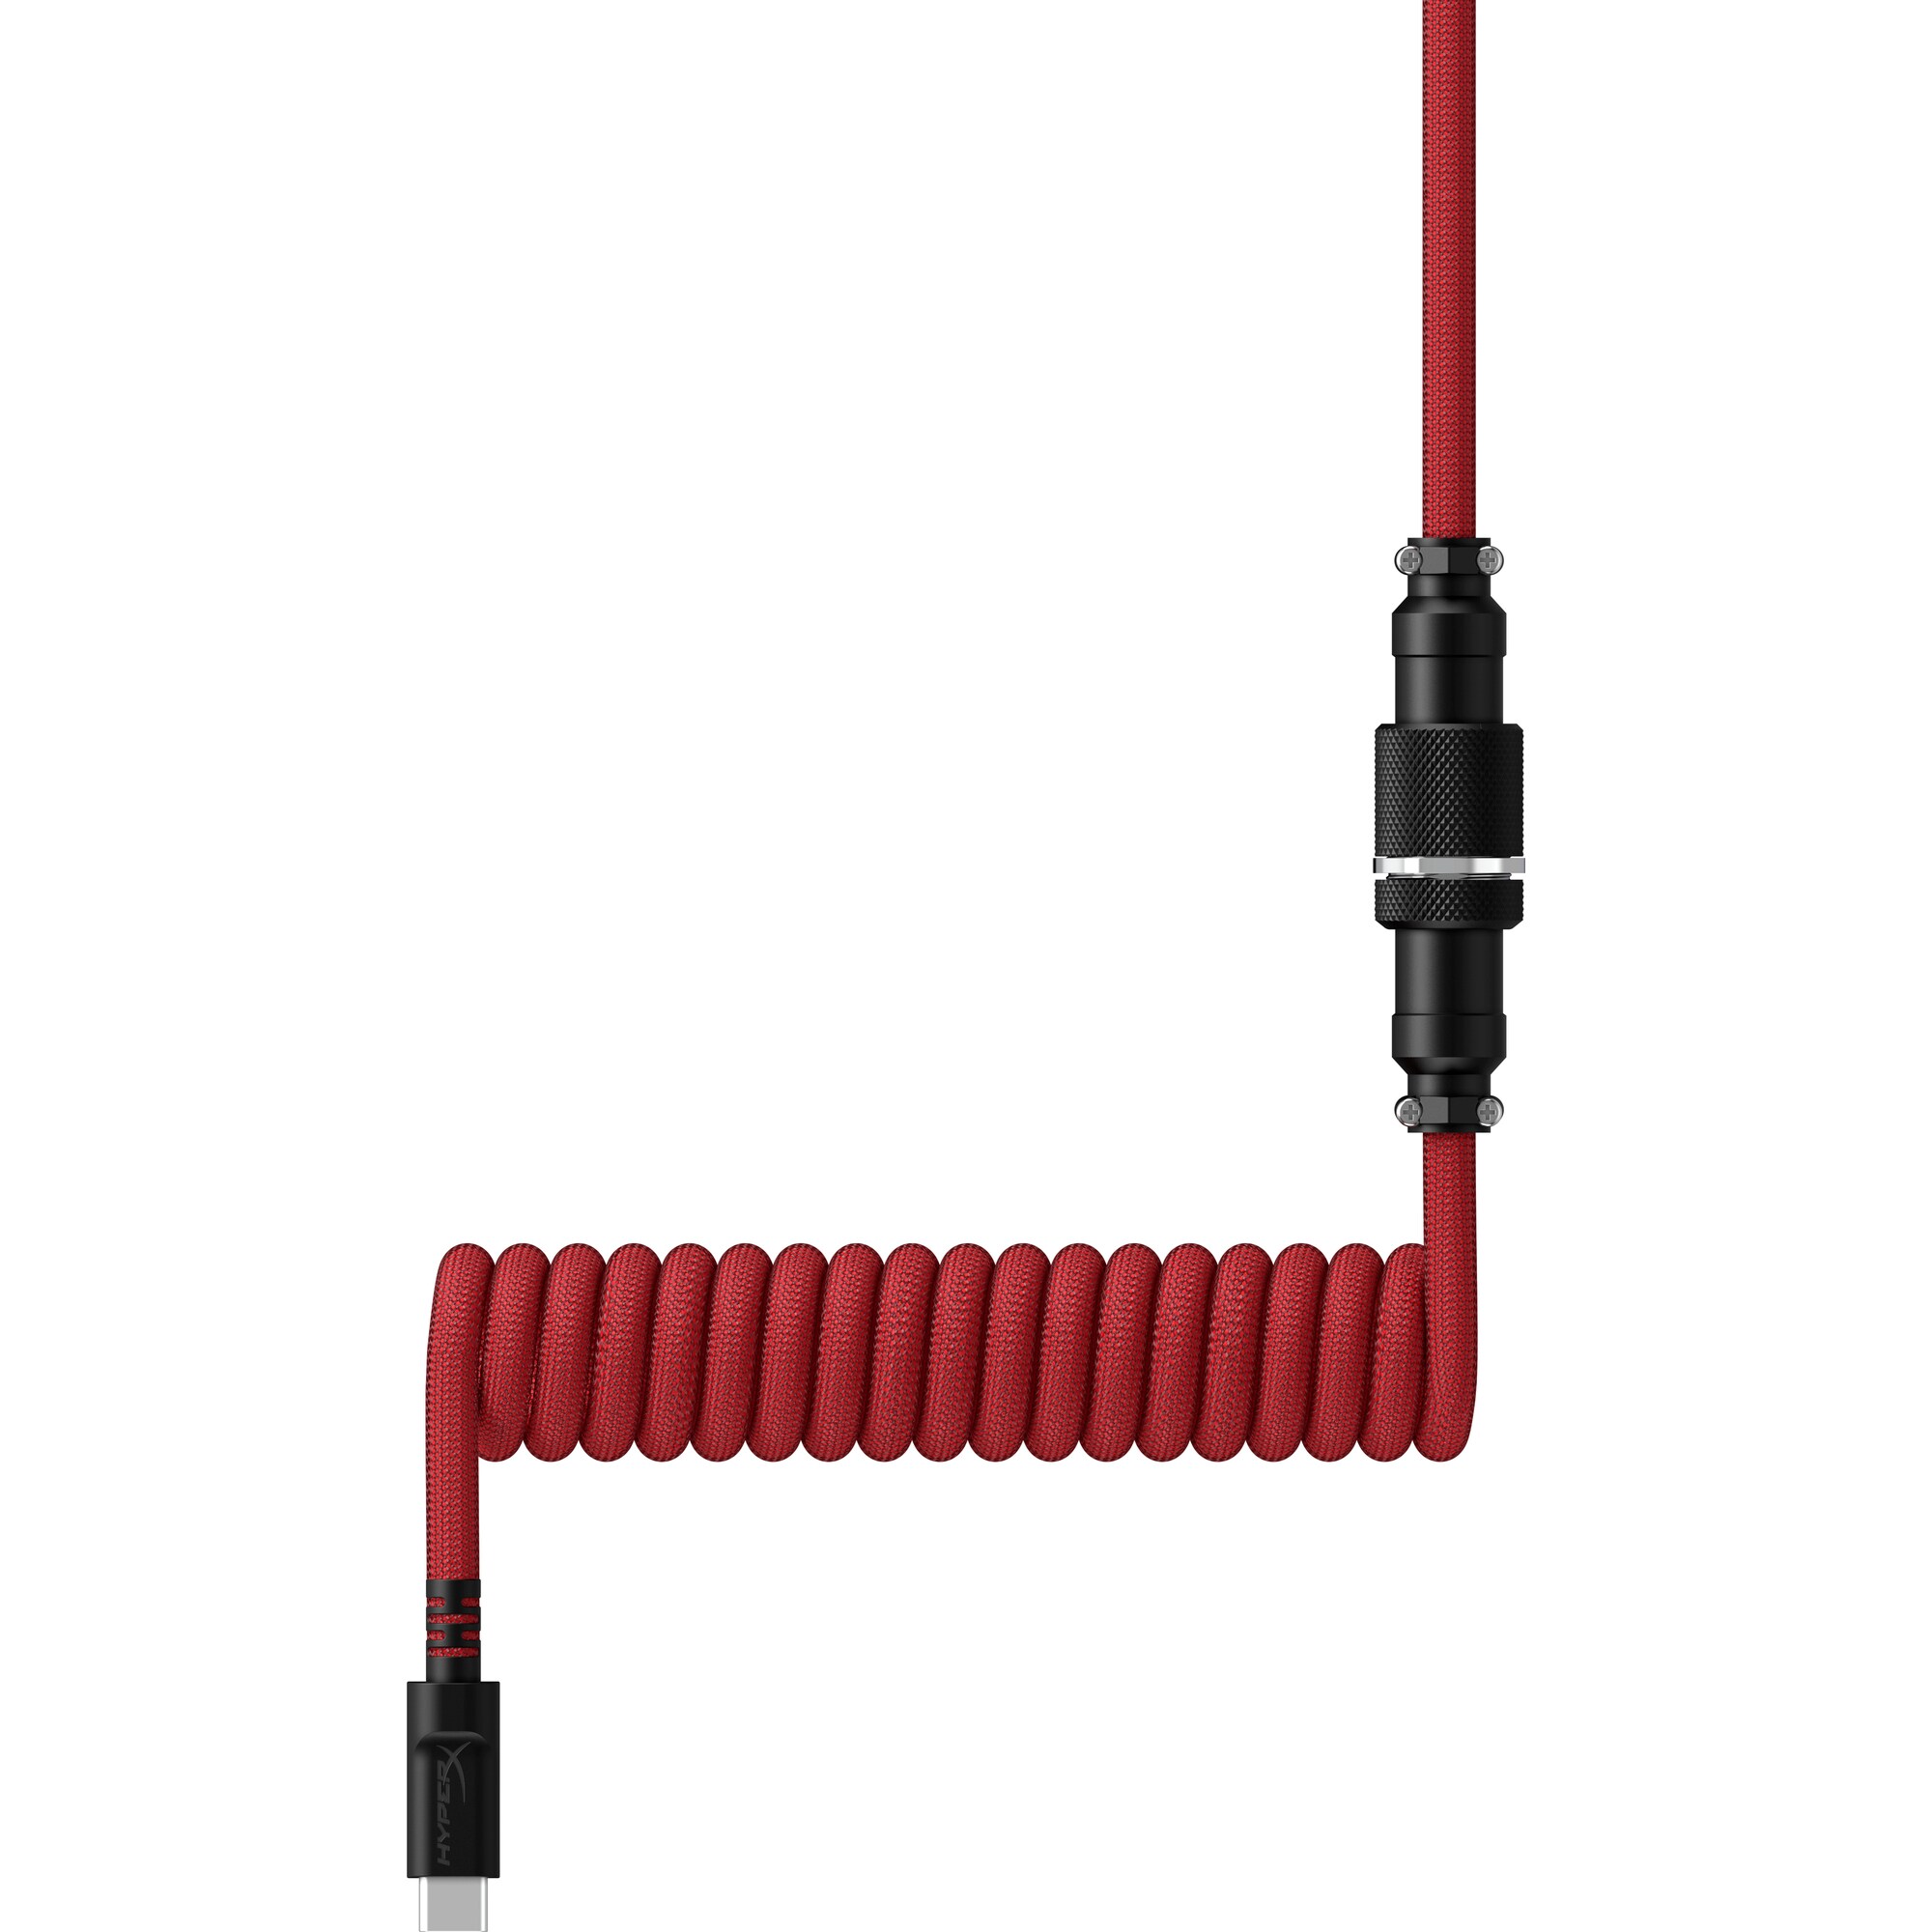 HyperX USB-C Coiled Cable Red-Black - Příslušenství ke klávesnici1 